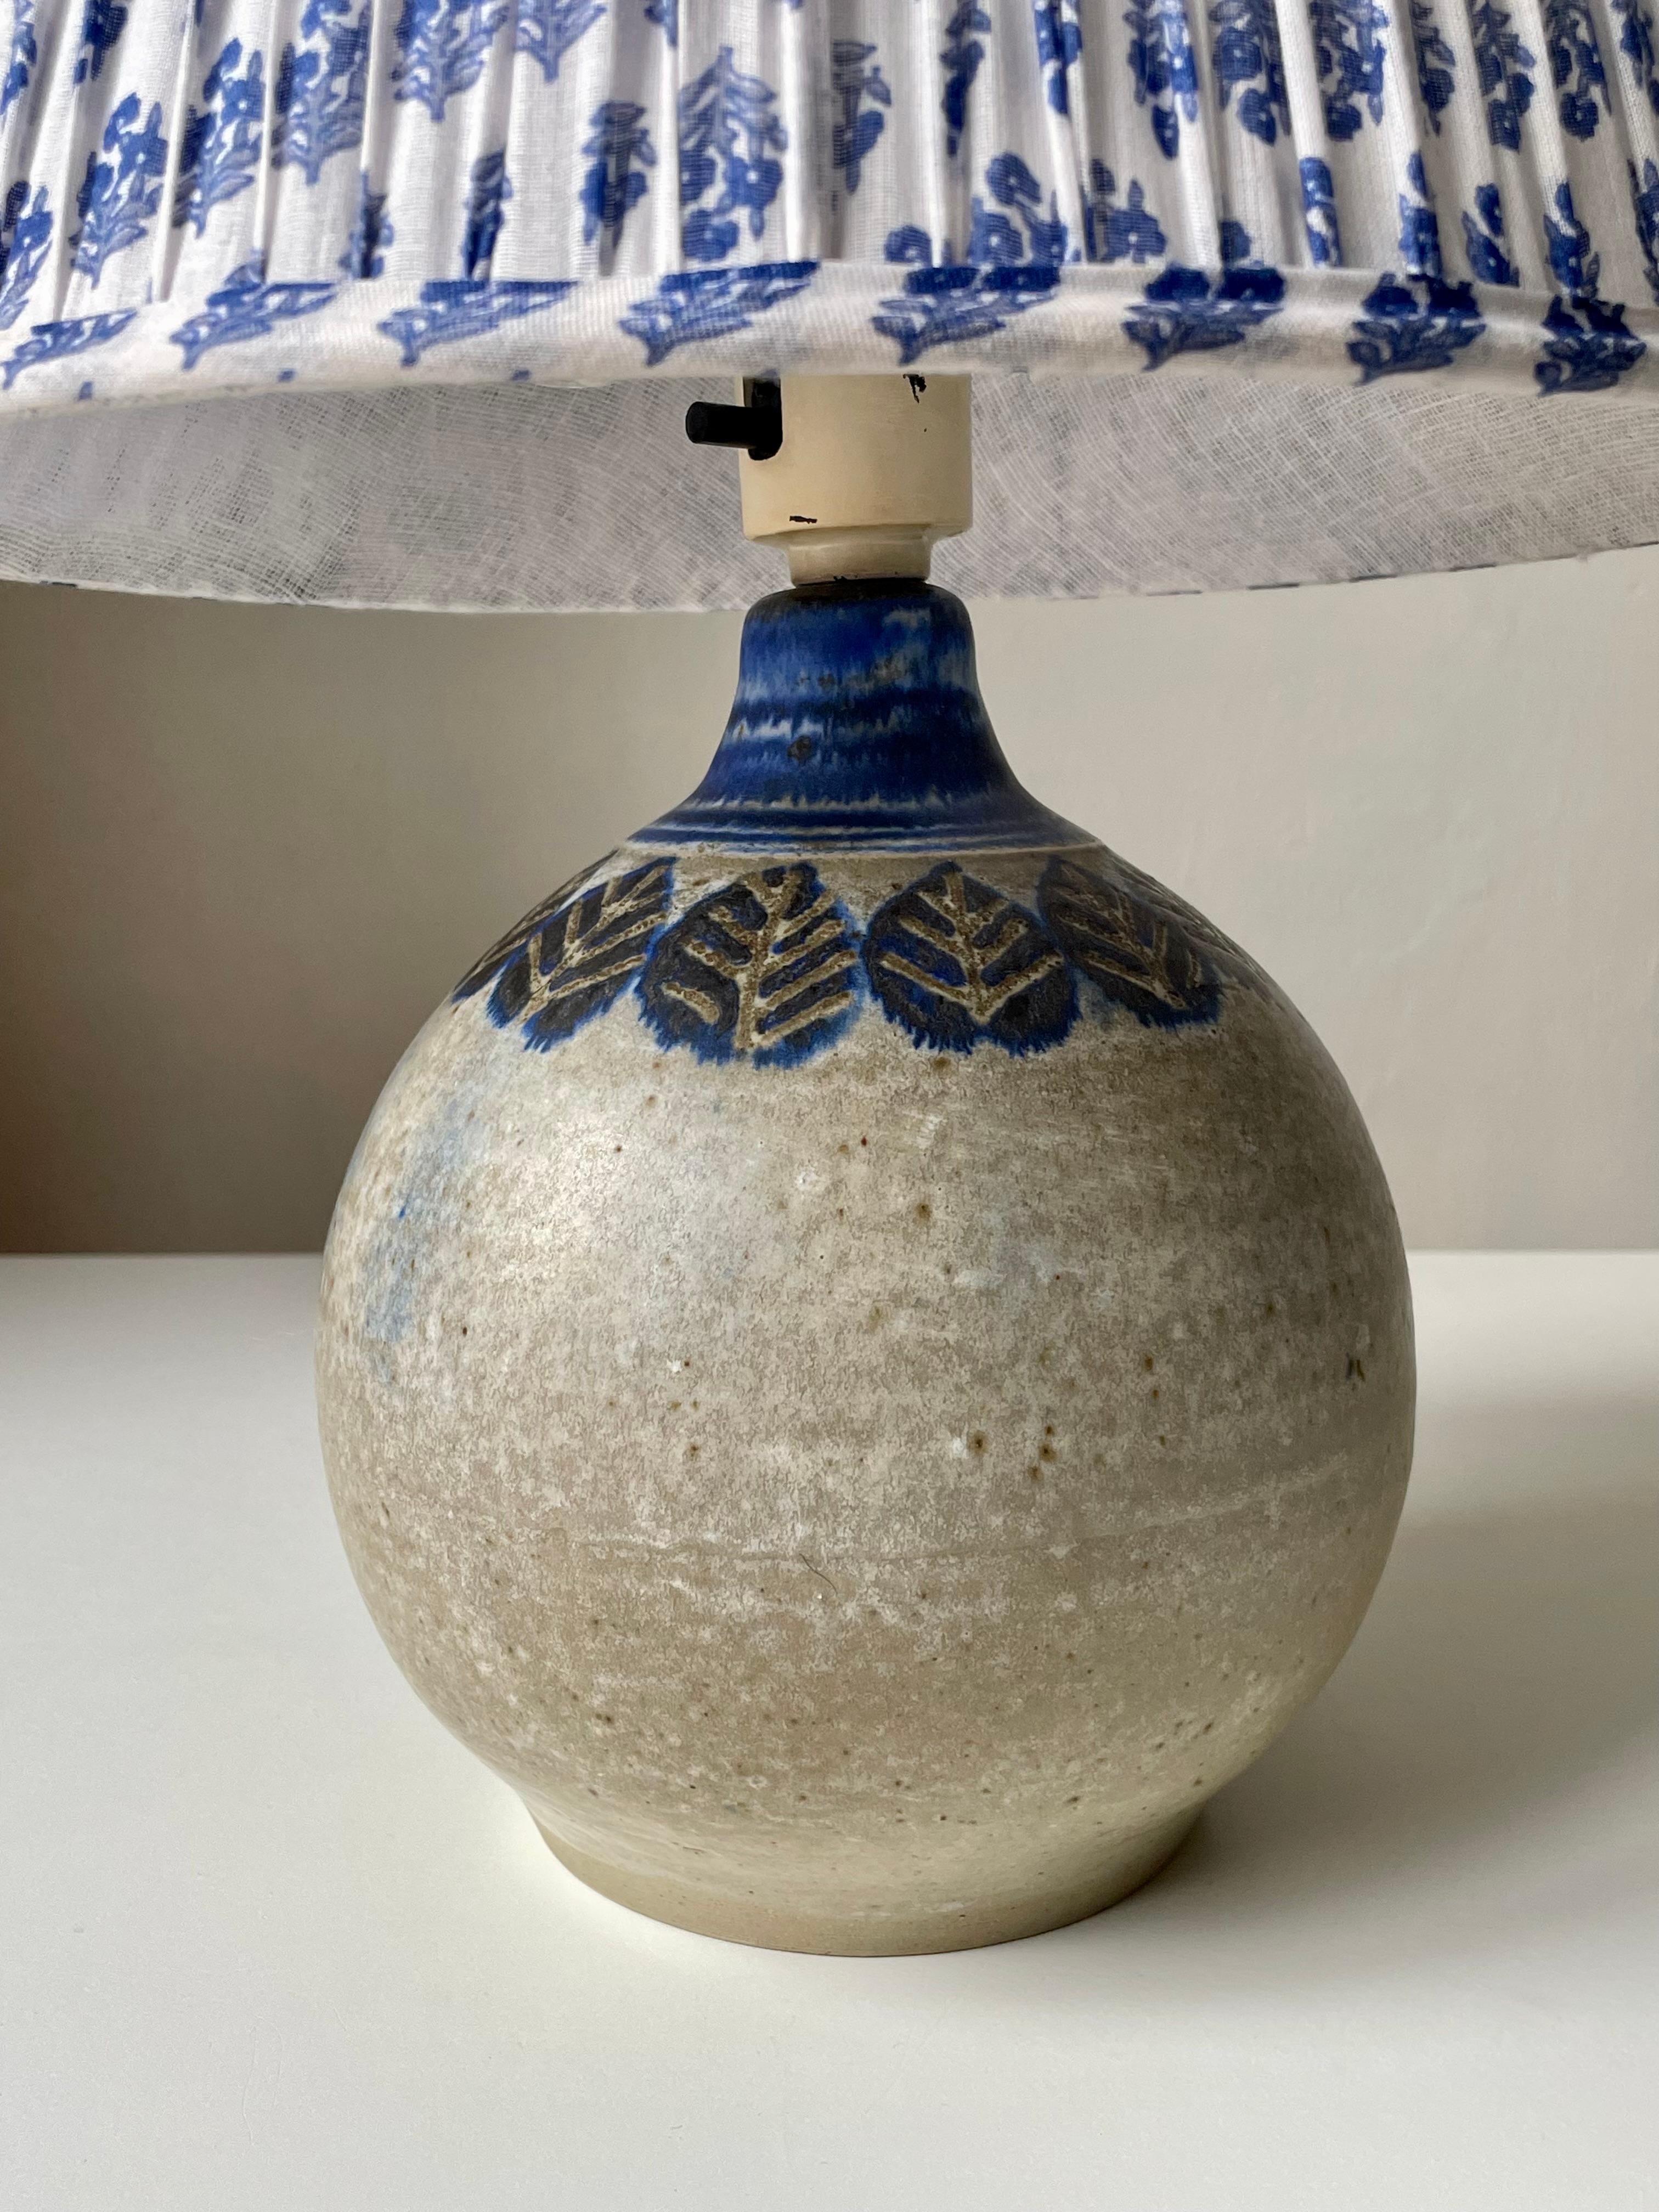 Runde sandfarbene glasierte dänische moderne Keramik-Tischlampe mit handgemalten stilisierten blauen Blättern unter dem blau glasierten Hals. Entworfen und handgefertigt von Nis Stougaard auf der dänischen Insel Bornholm in den 1960er Jahren. Unter